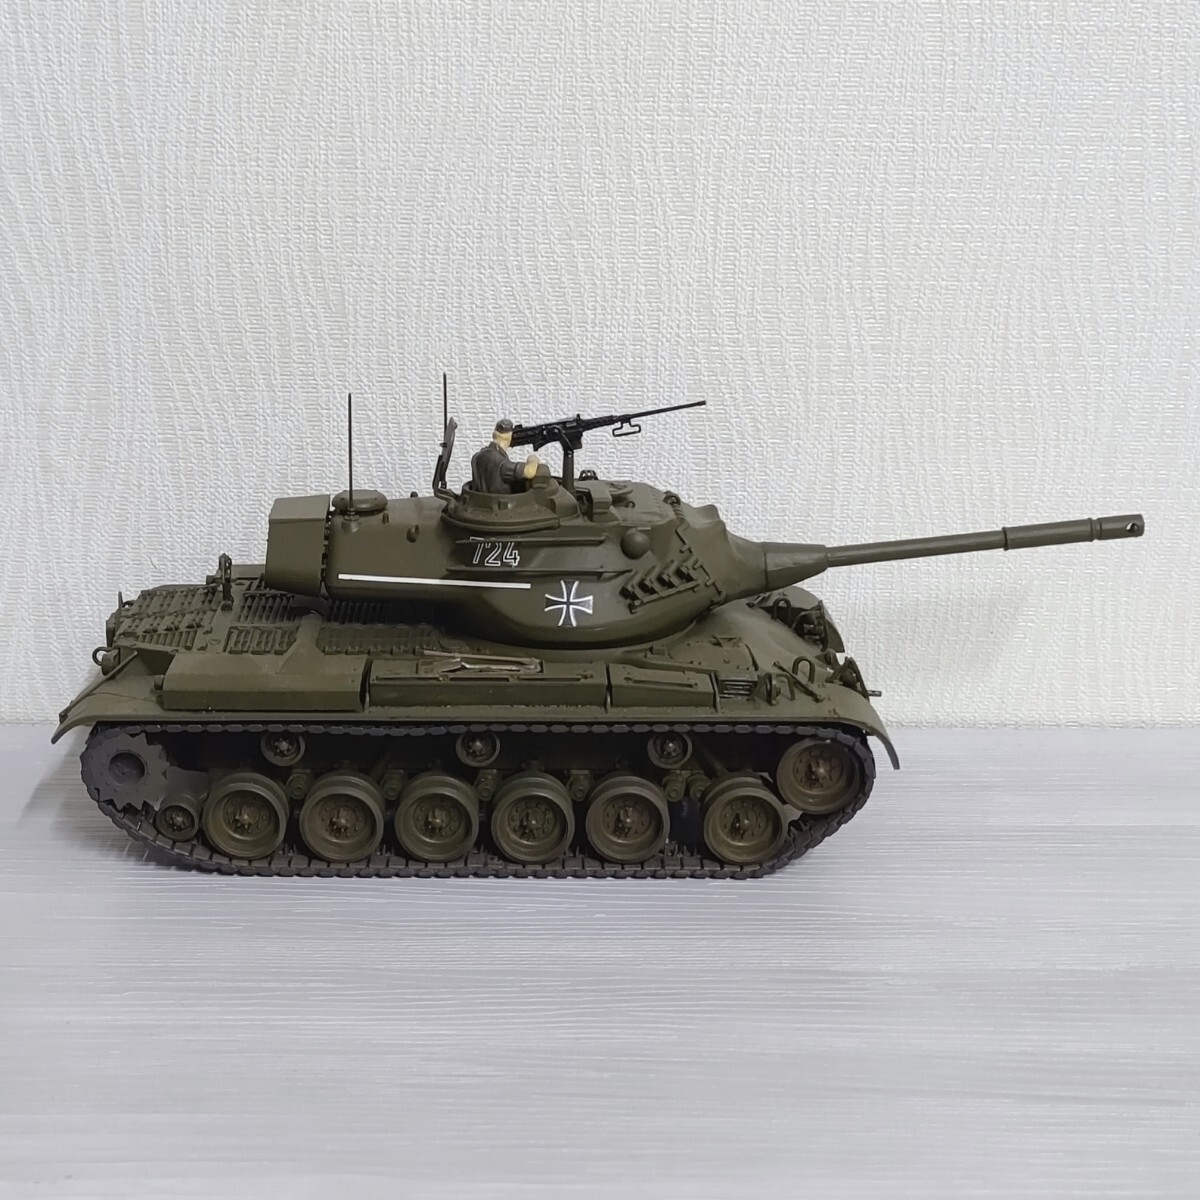 1/35 ドイツ連邦軍 M47 パットン プラモデル 完成品 第二次世界大戦 戦車 ドイツ軍 塗装済み_画像5